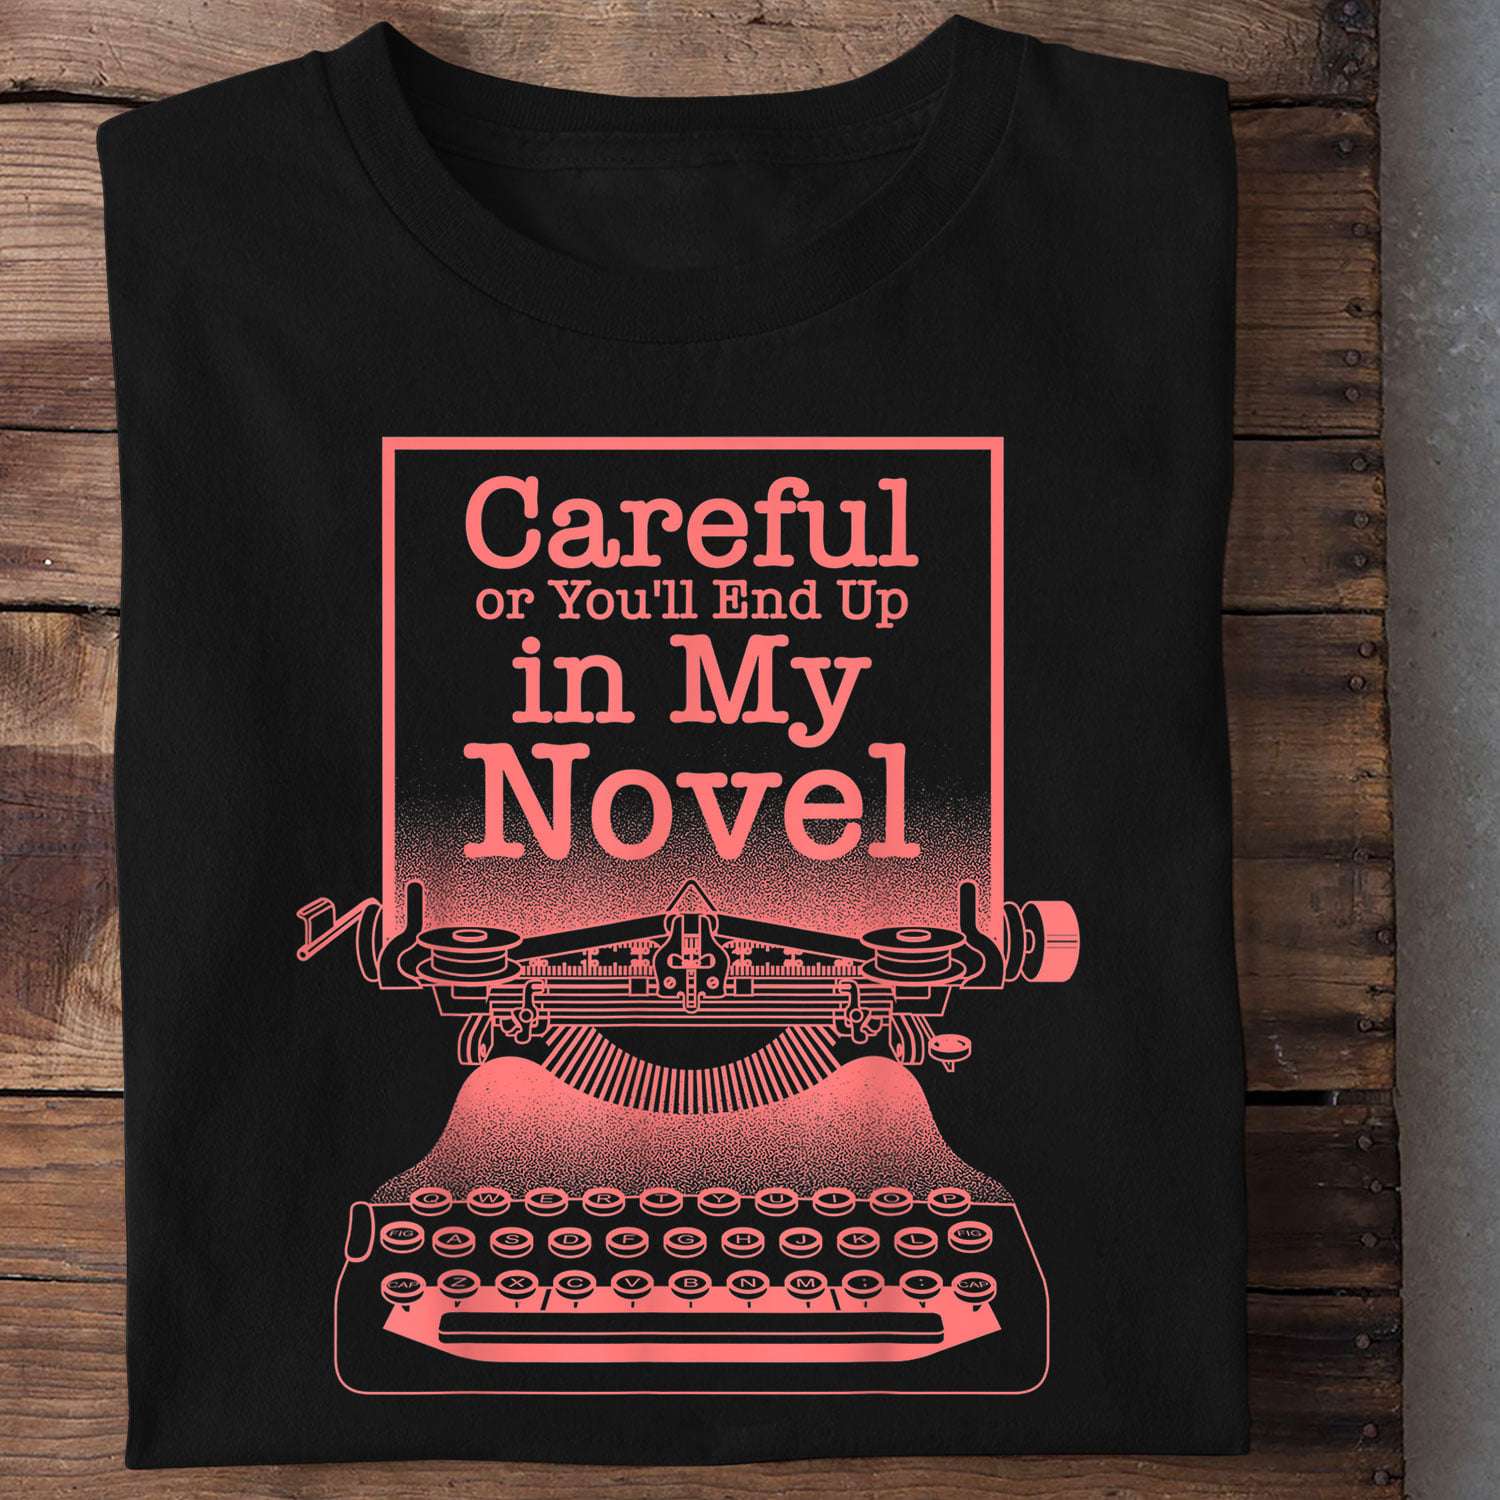 Old Vintage Typewriter, T-shirt for Novelist - Careful or you'll end up in my novel